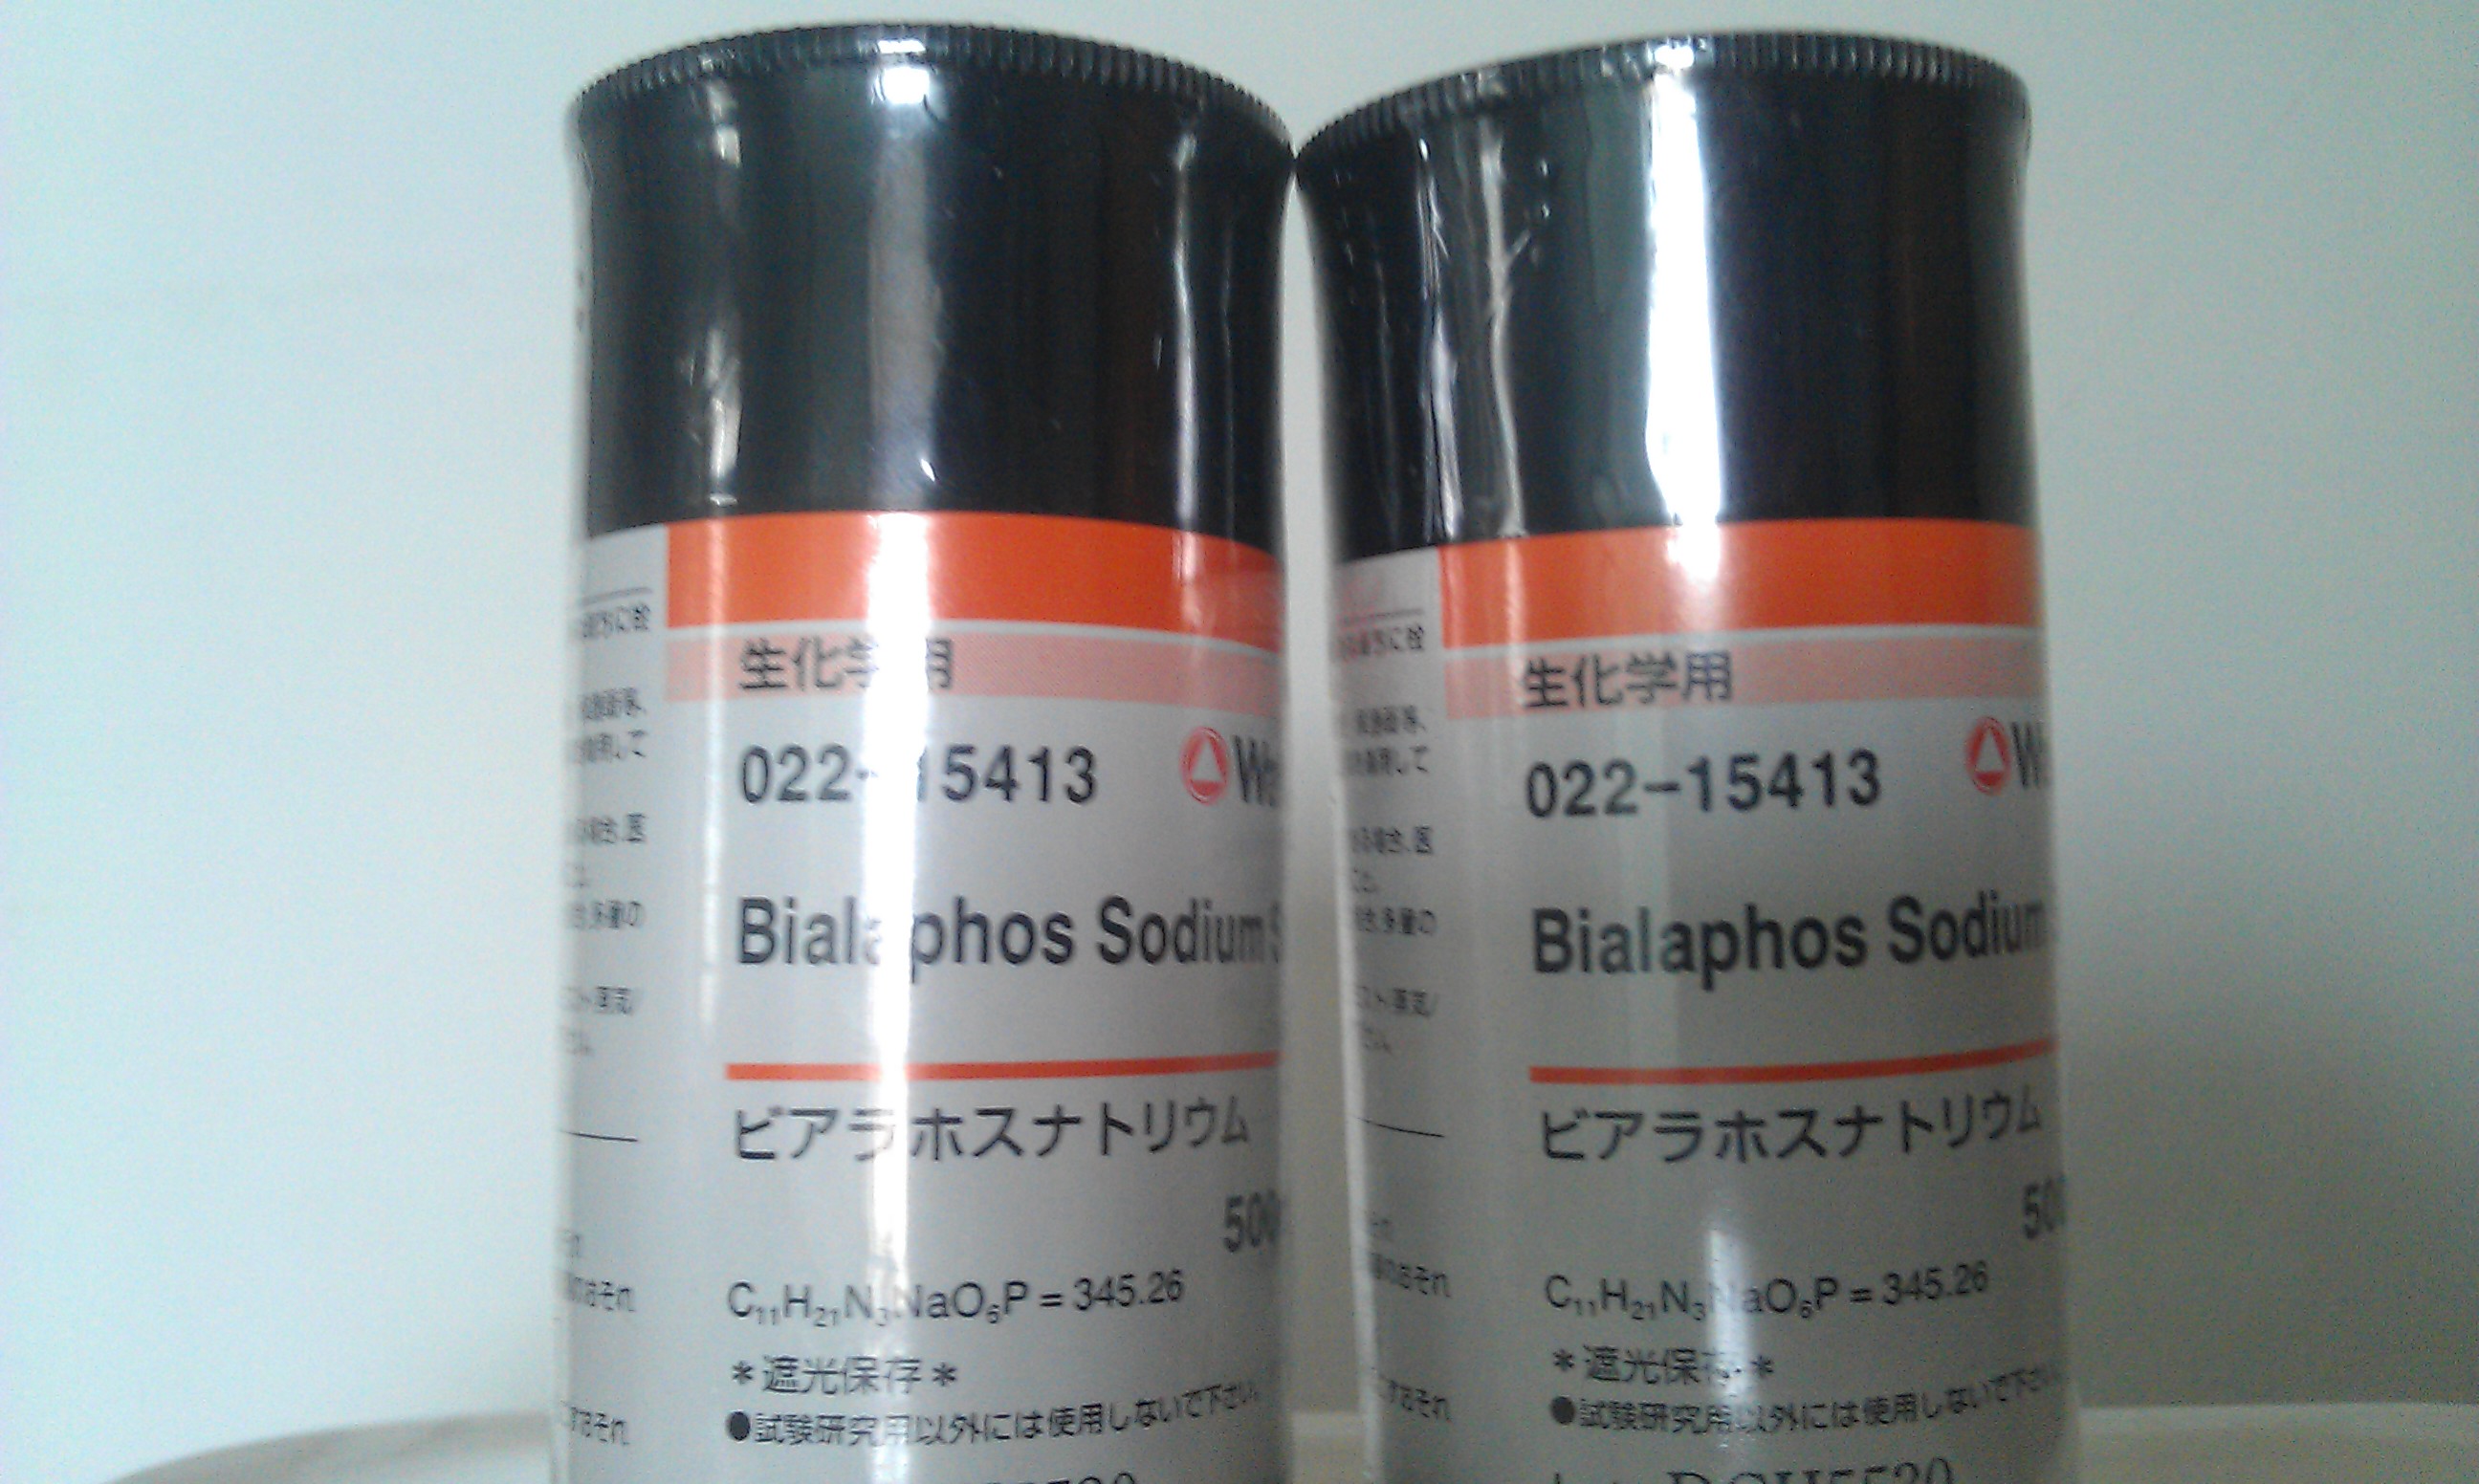 大秦科技提供bialaphos(双丙氨磷)